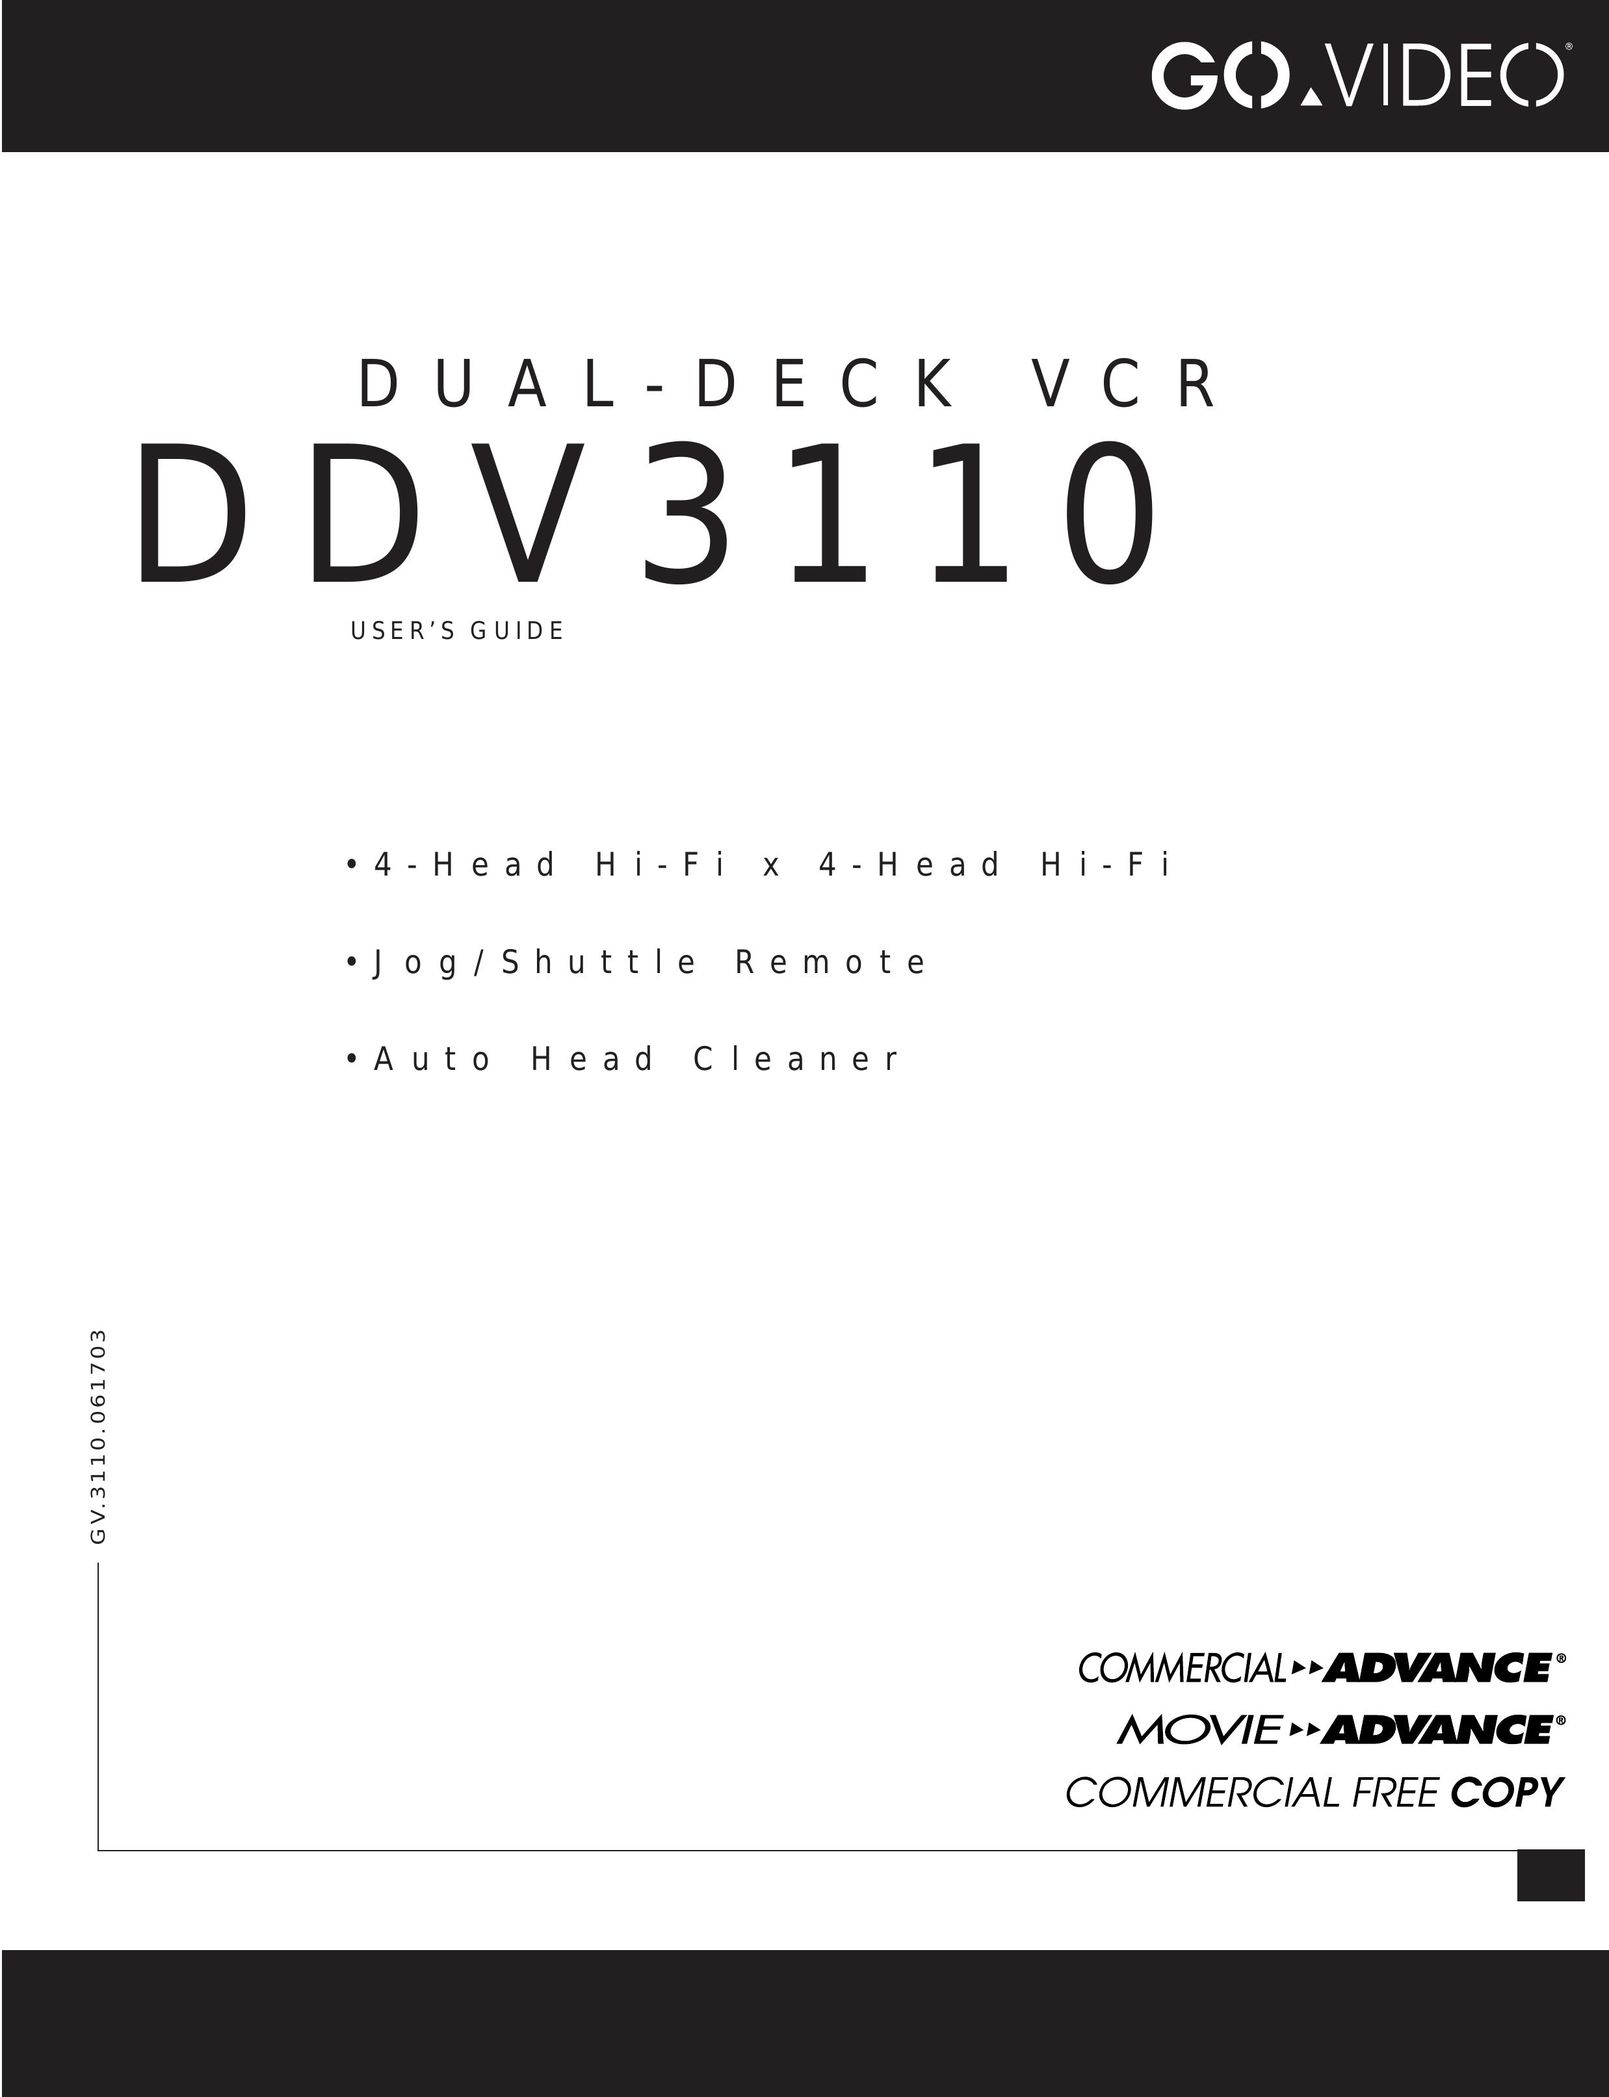 GoVideo DDV3110 VCR User Manual